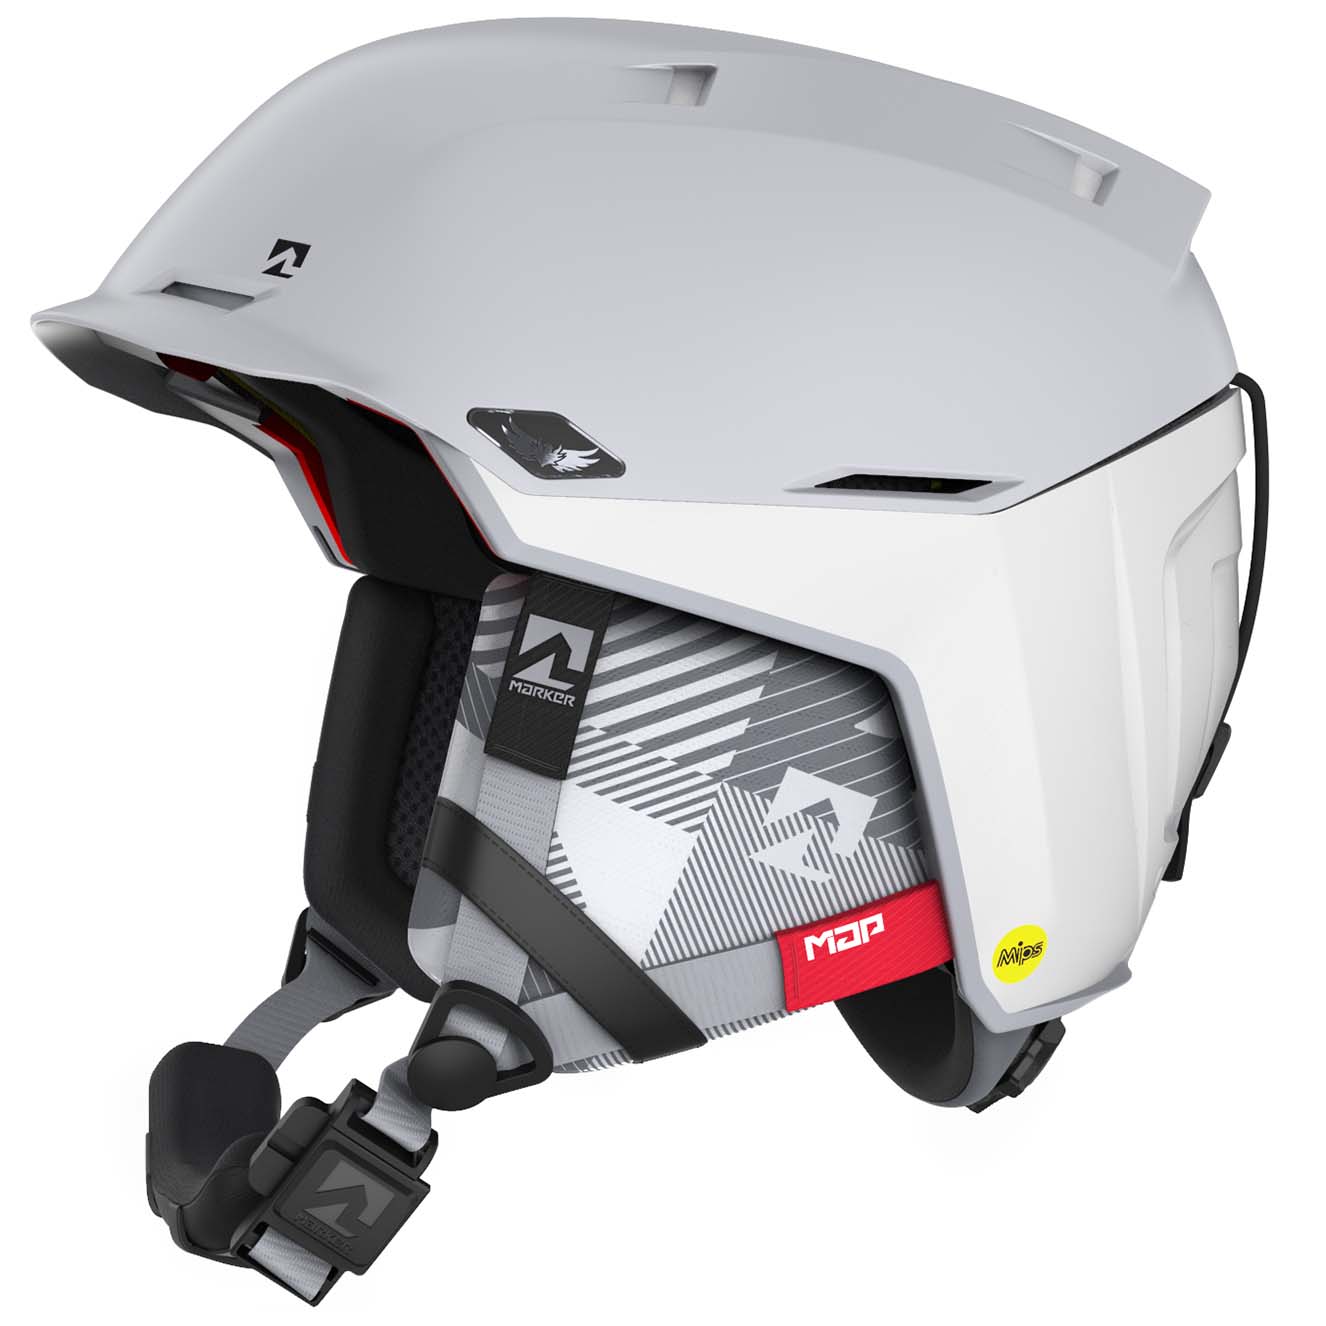 Marker Phoenix 2 MIPS W Women's Ski/Snowboard Helmet